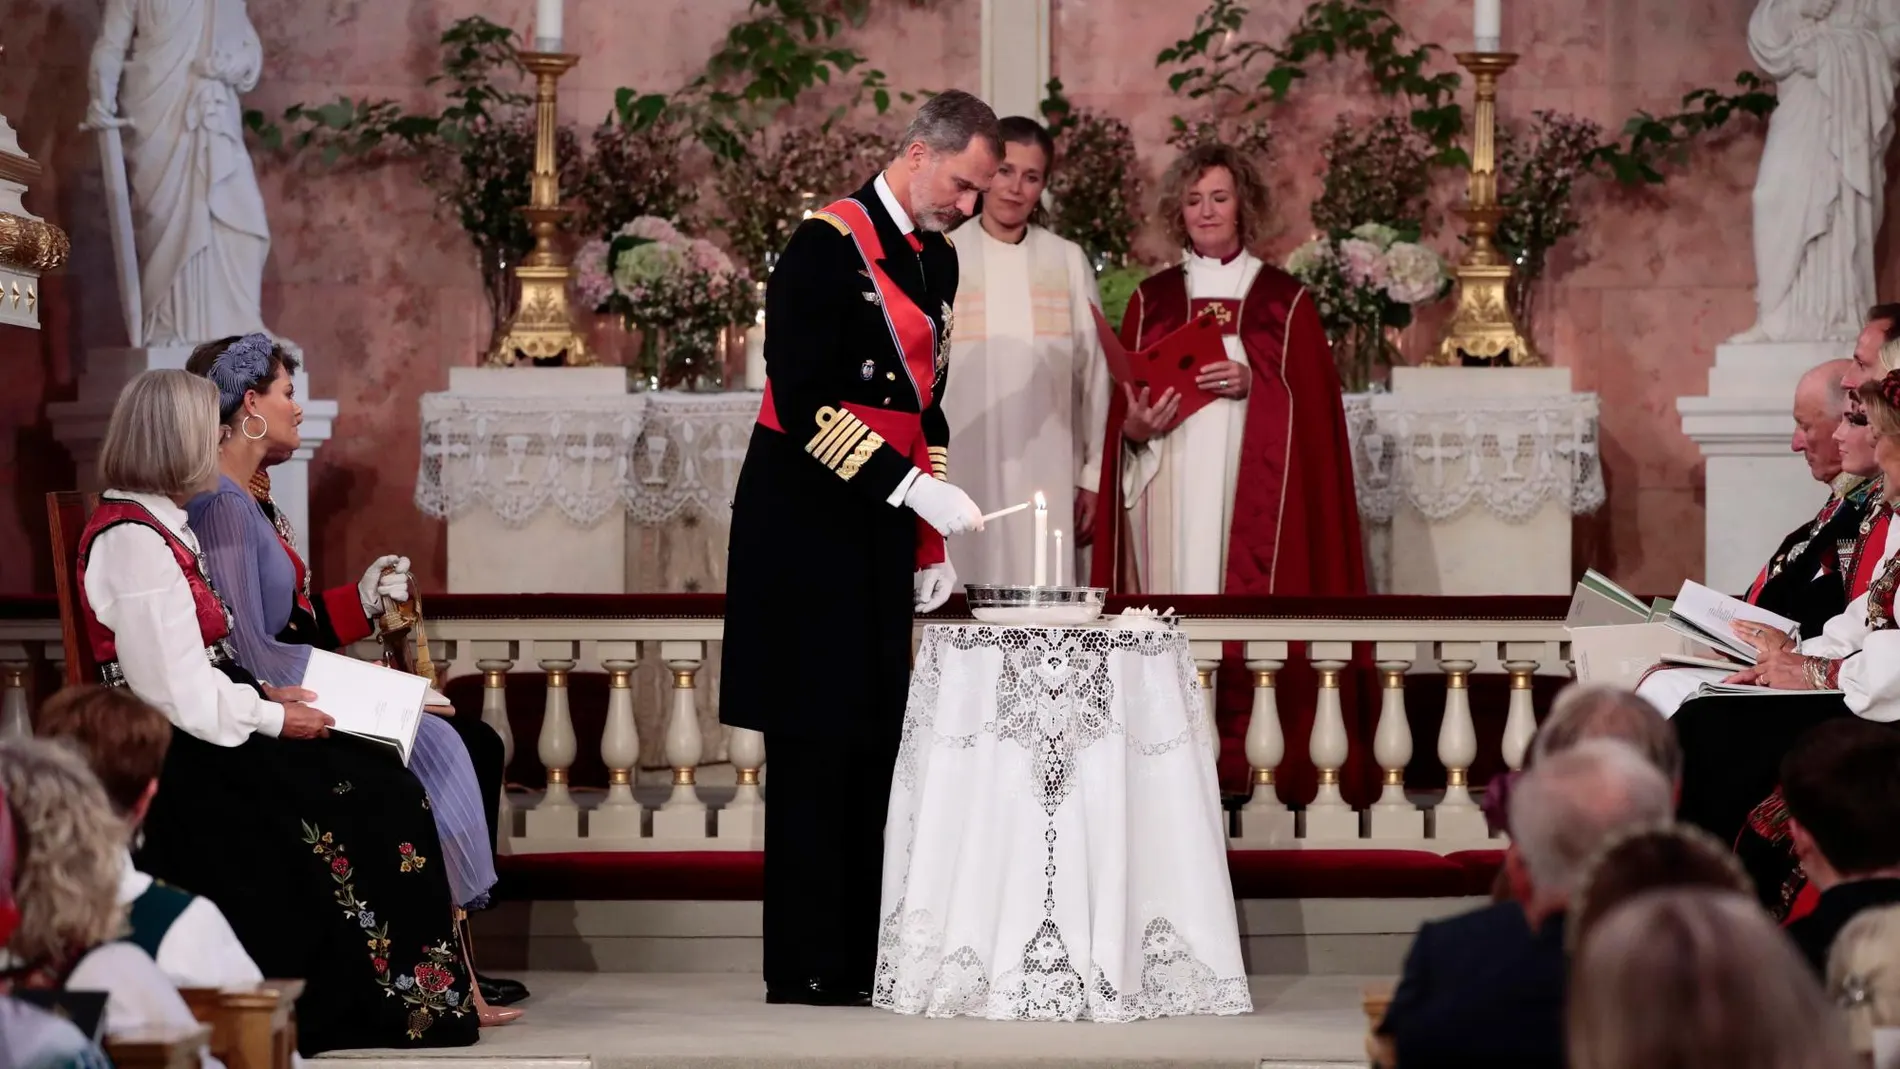 El Rey Felipe VI encendiendo una vela durante la confirmación de Ingrid Alexandra